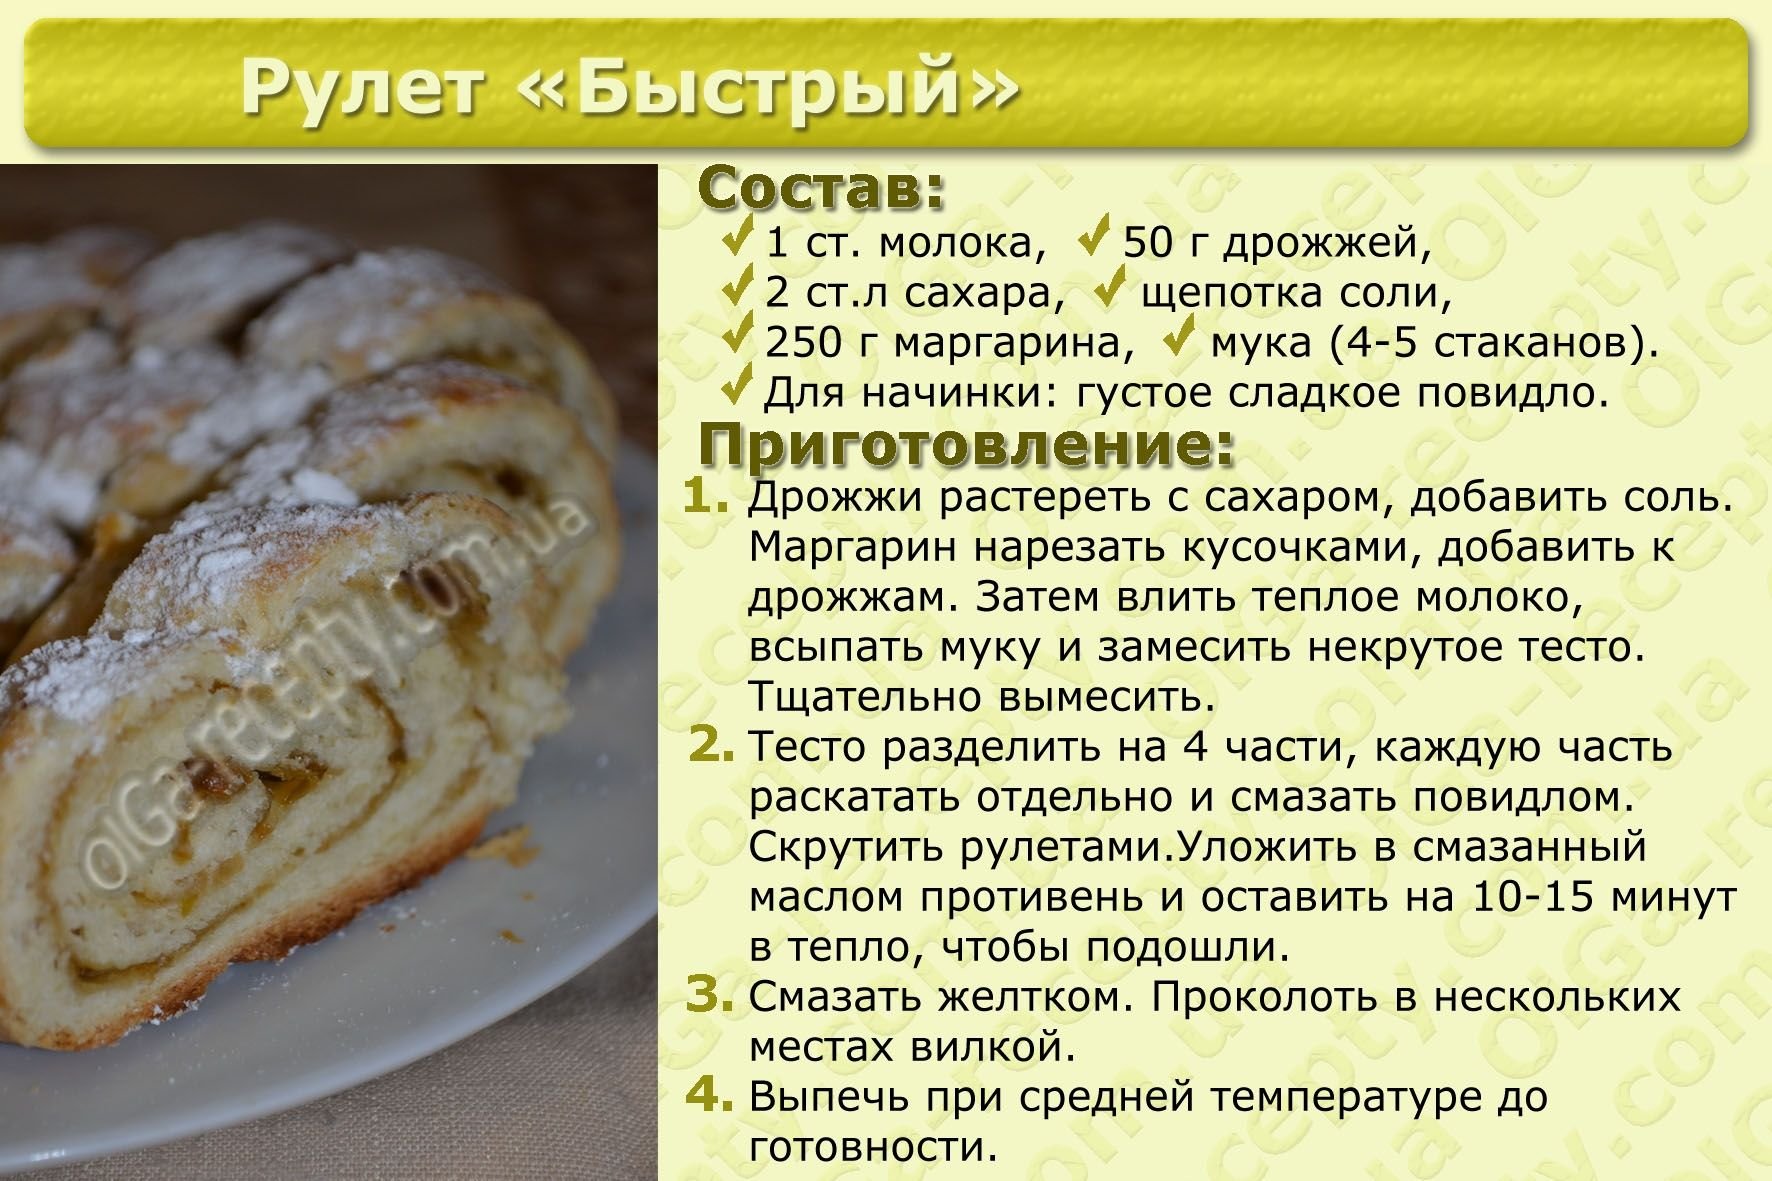 Простые рецепты теста для тортов. Рецепты. Рецепты с описанием. Рецепты в картинках с описанием. Рецепты блюд в картинках с описанием.